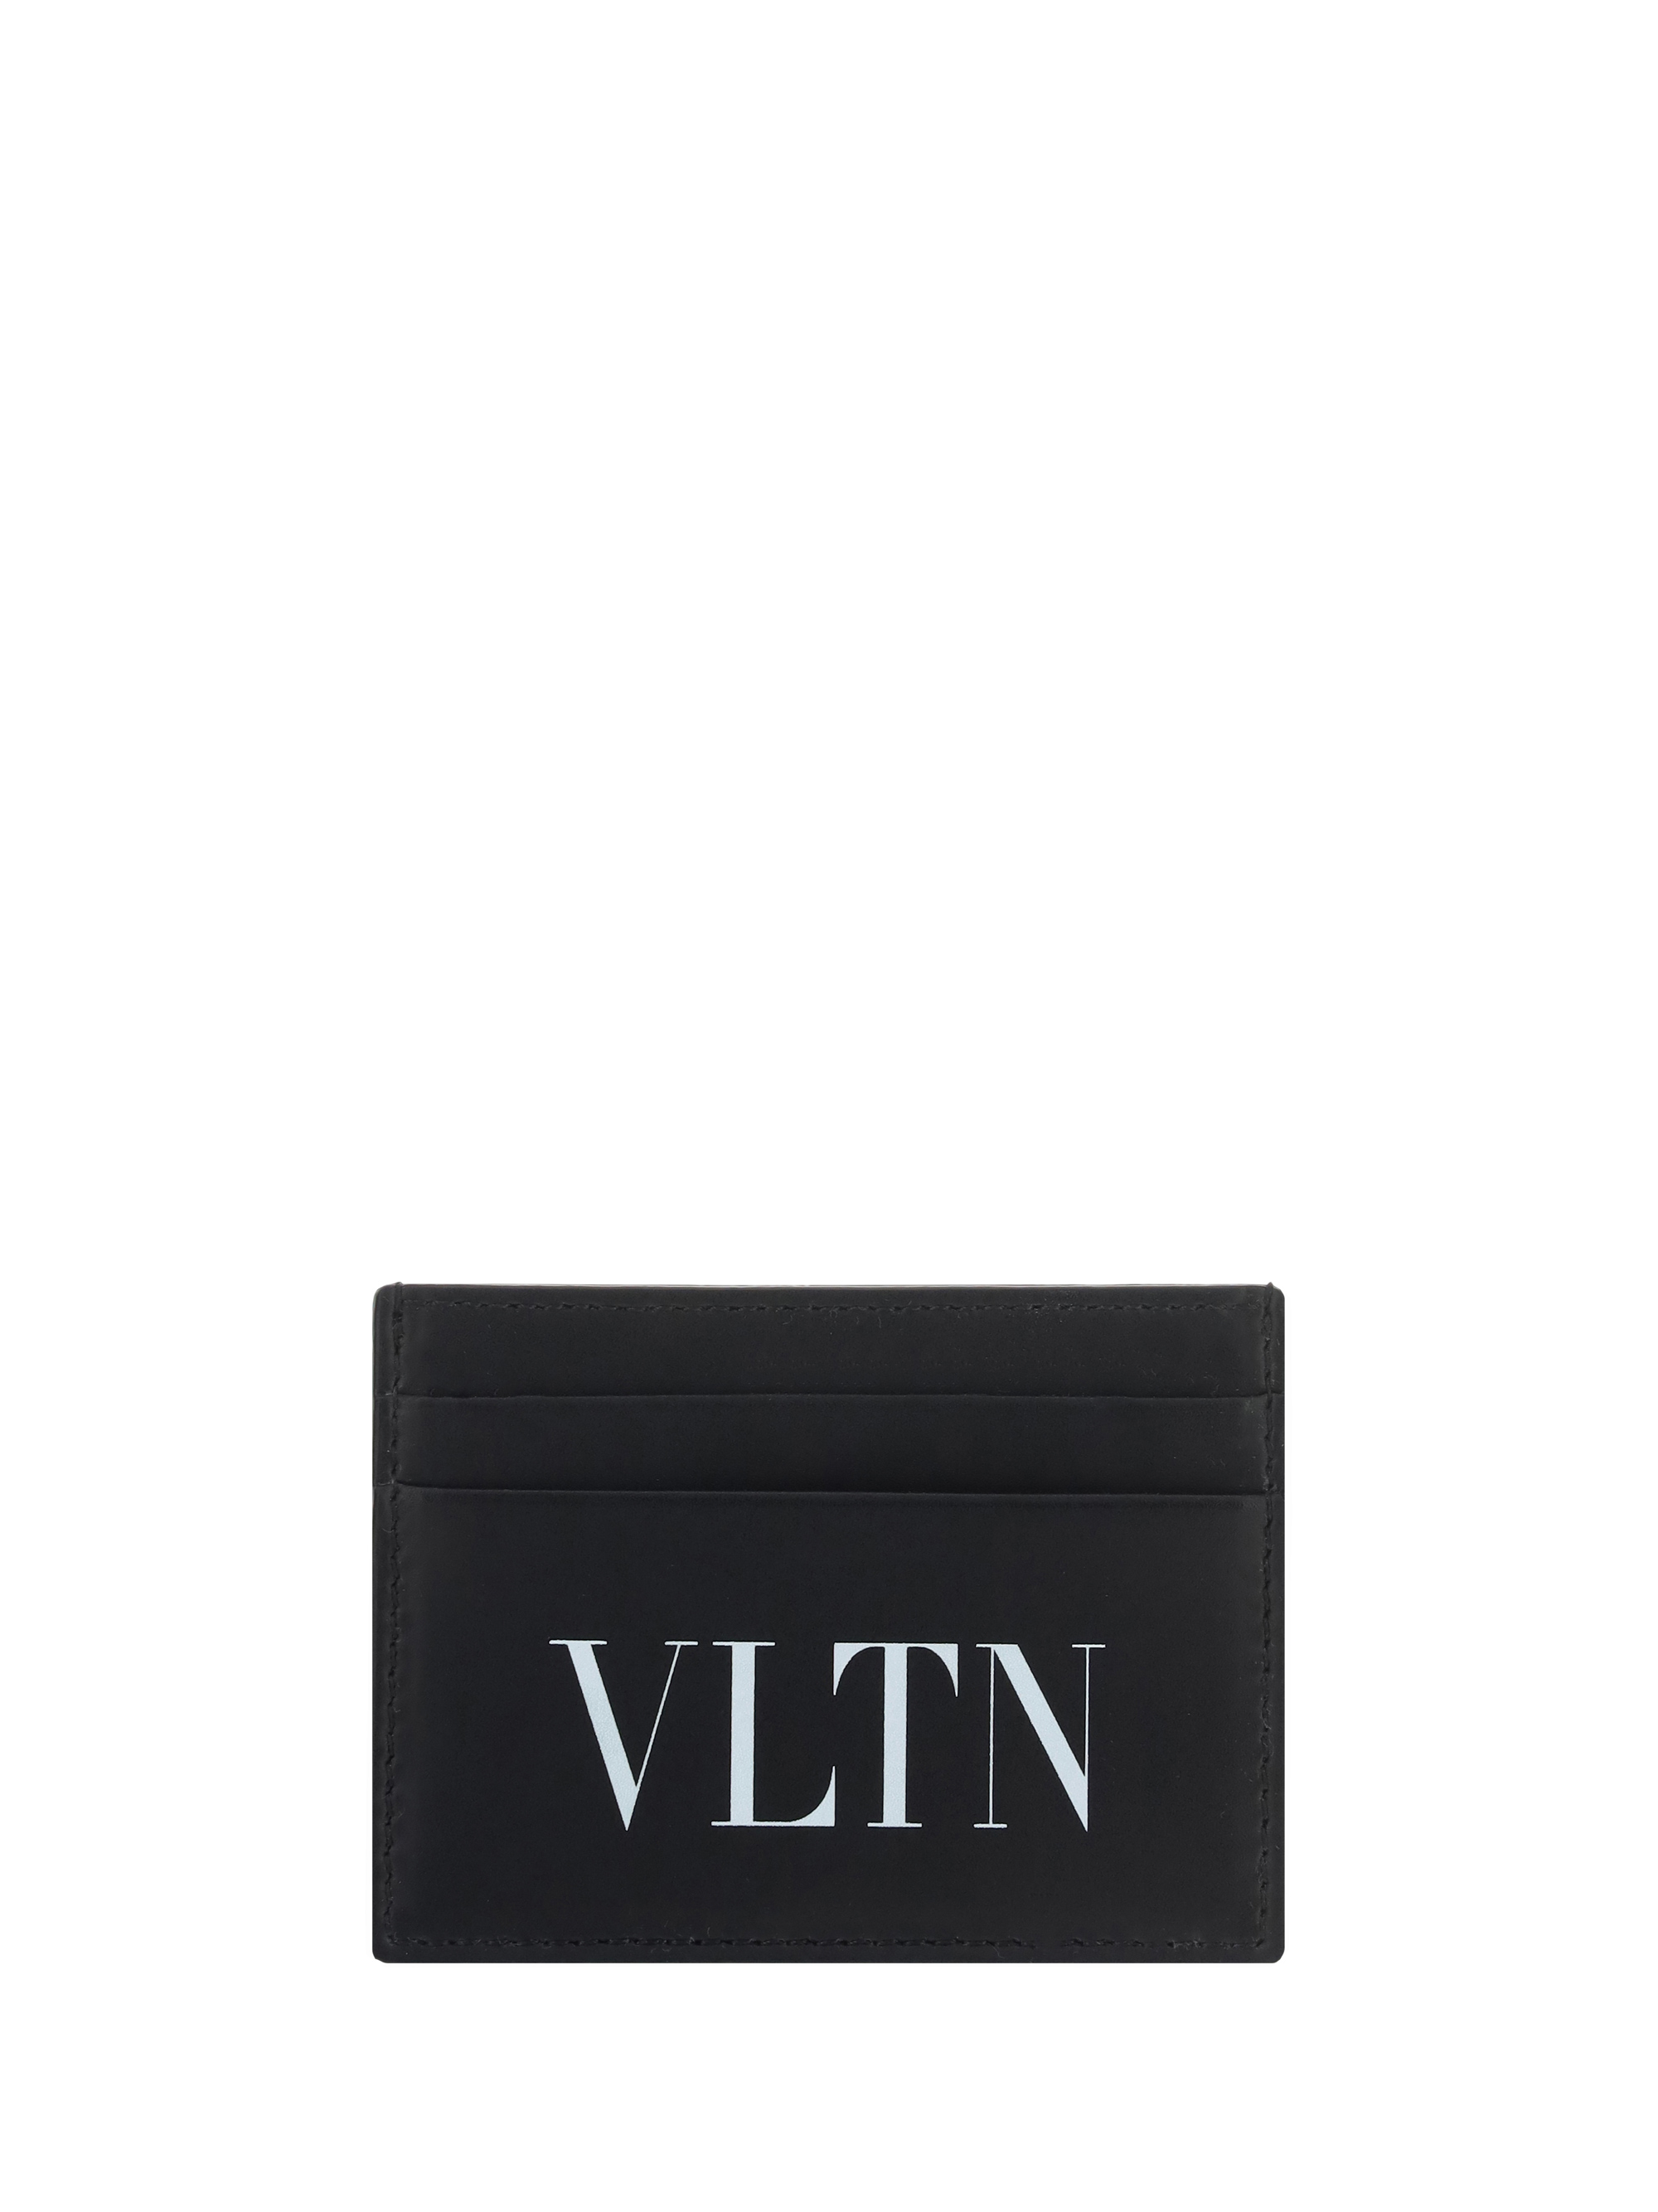 Valentino Garavani Vtln Card Holder In Black